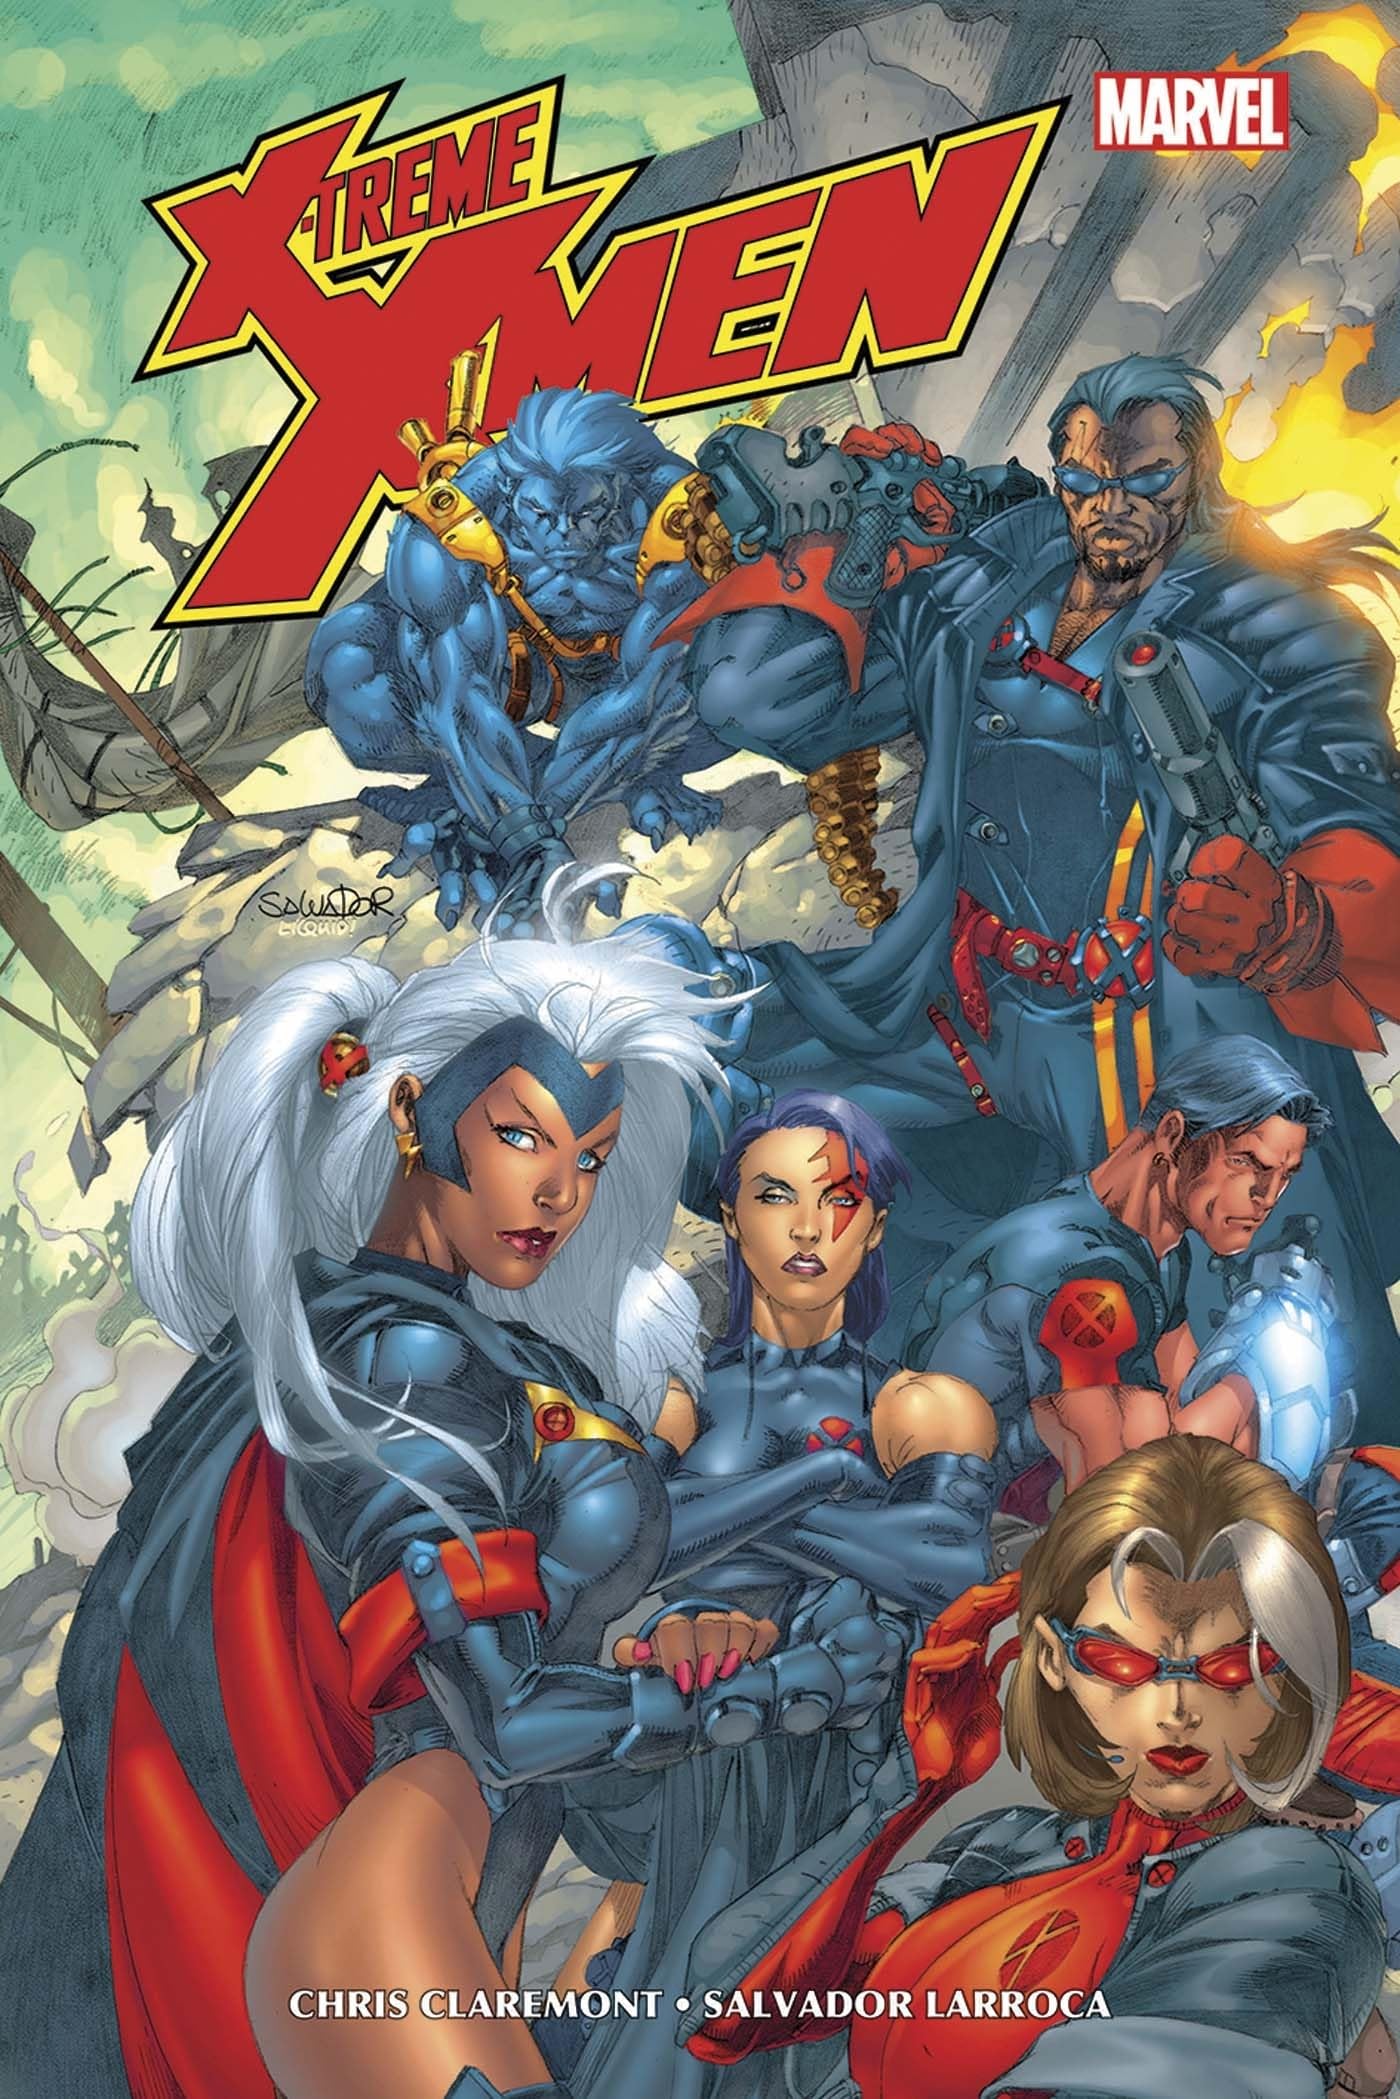 X-Treme X-Men T01: Tome 1